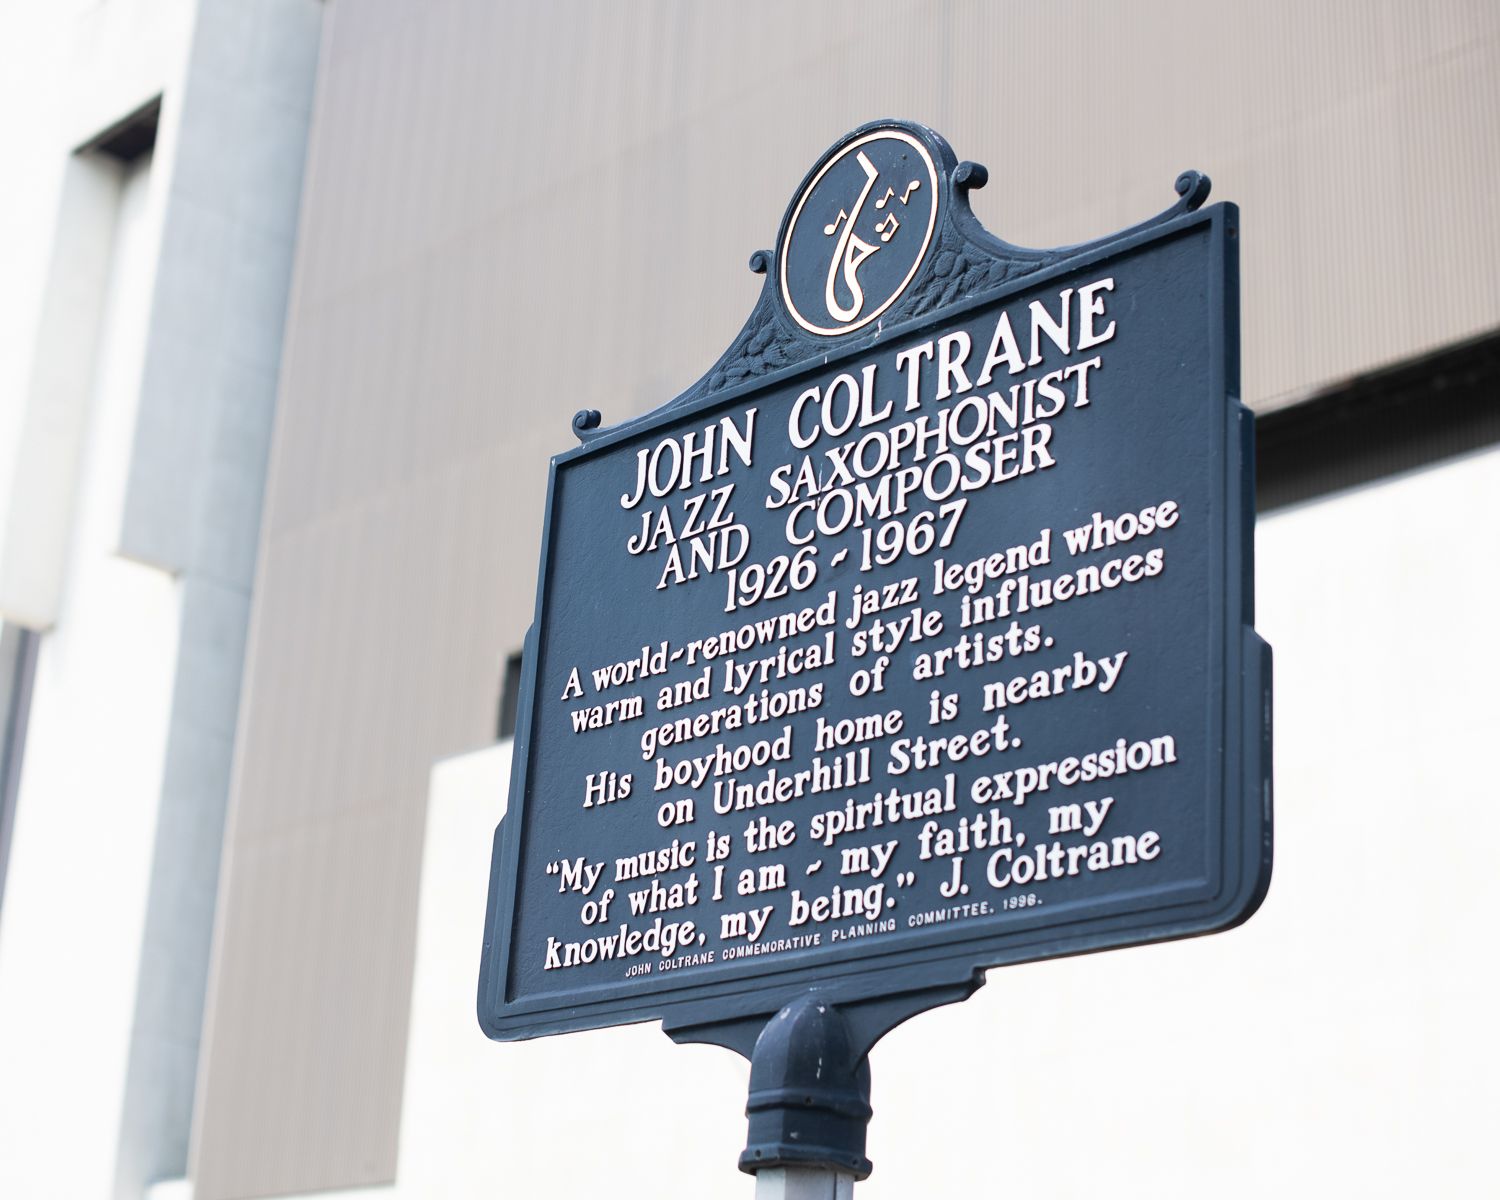 A sign describing John Coltrane's impact on jazz music.